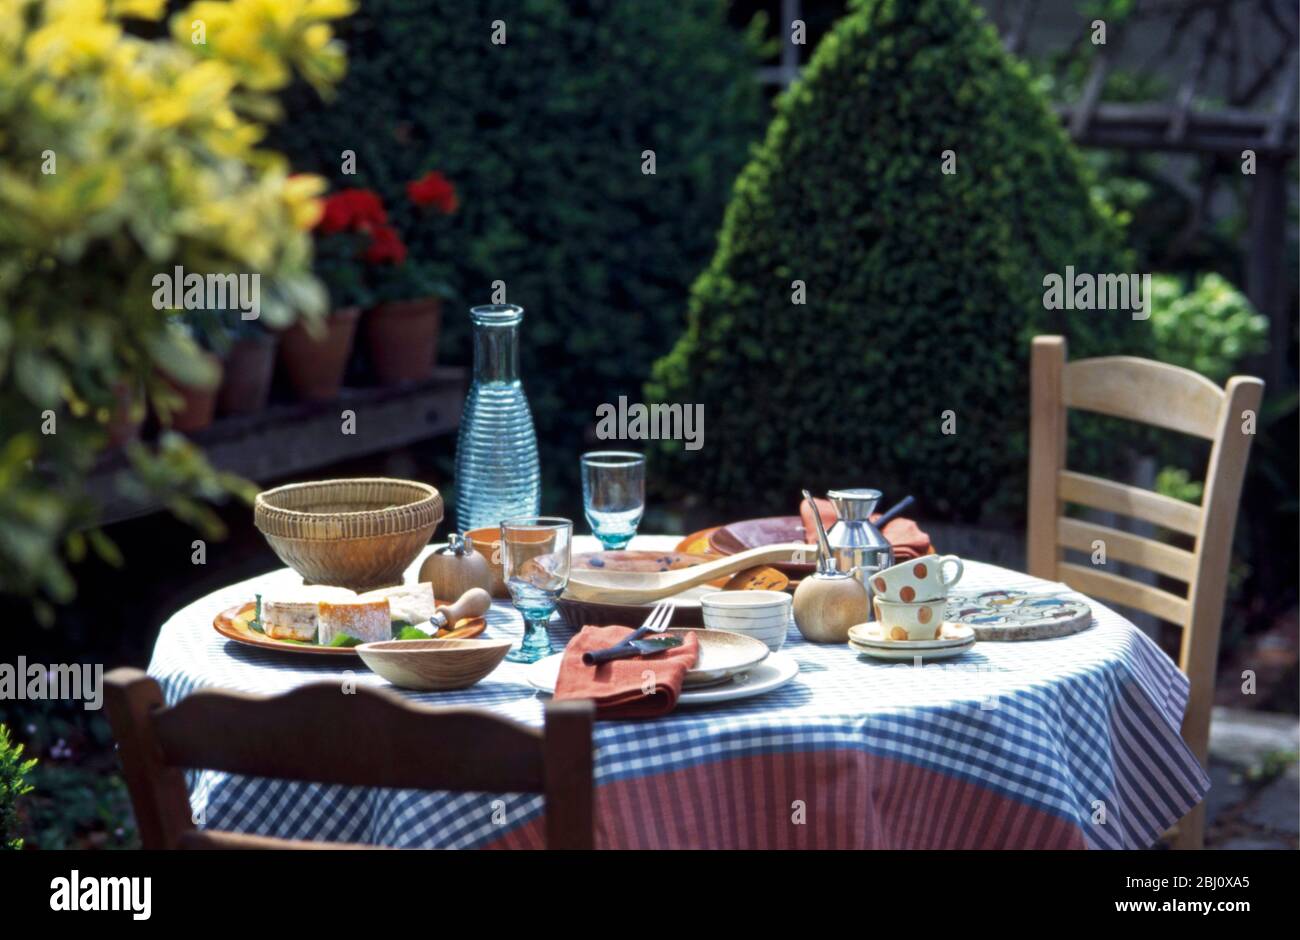 Mittagstisch im Garten bei Sonnenschein, mit französischen Stühlen und gecheckter Tischdecke - Stockfoto